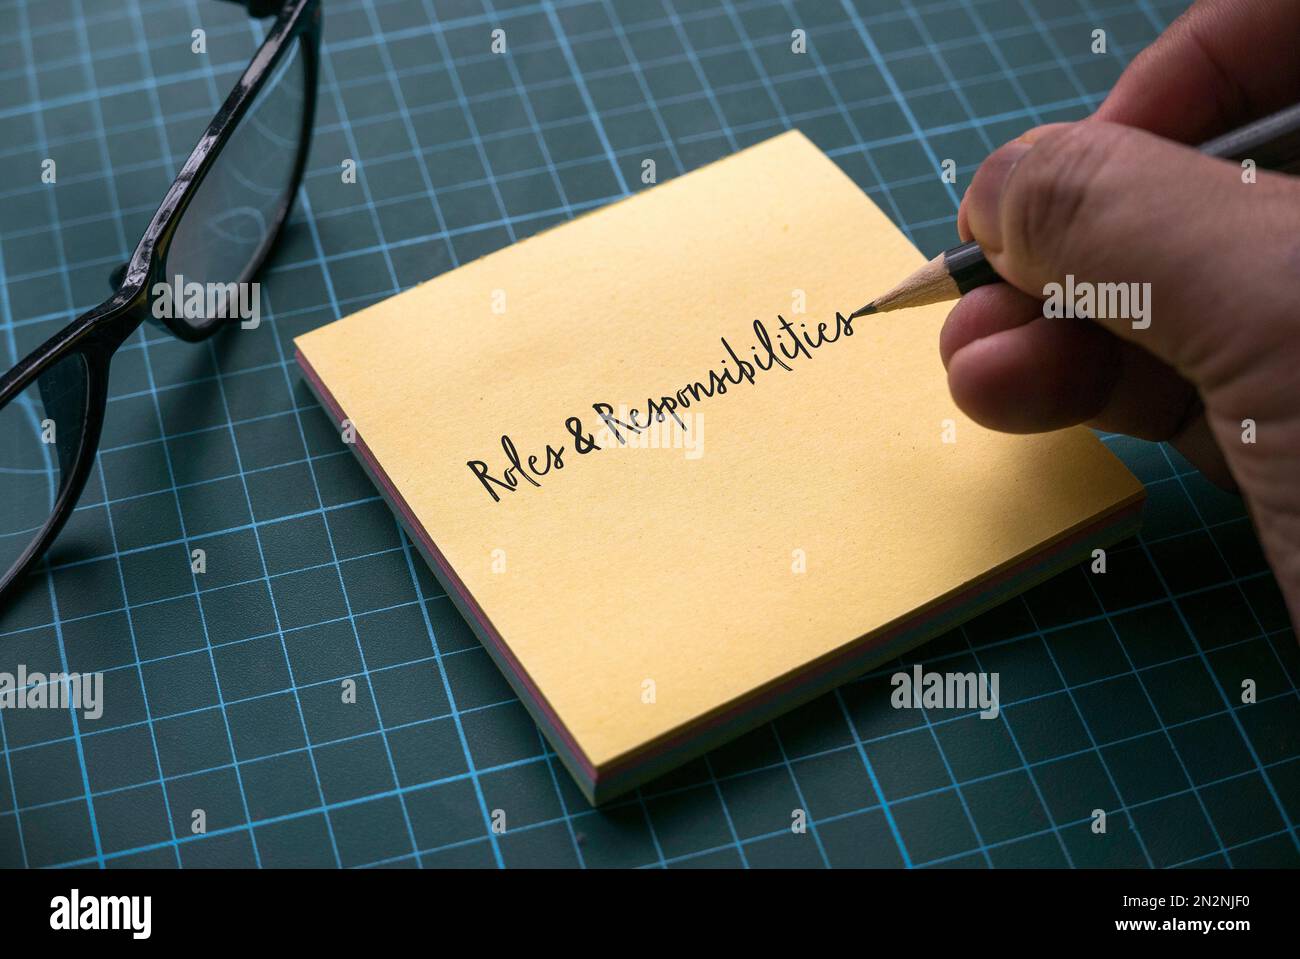 Eine Hand, die Rollen und Verantwortlichkeiten auf einen gelben Memo-Zettel mit einer Brille auf einer grünen Handwerkermatte schreibt. Stockfoto